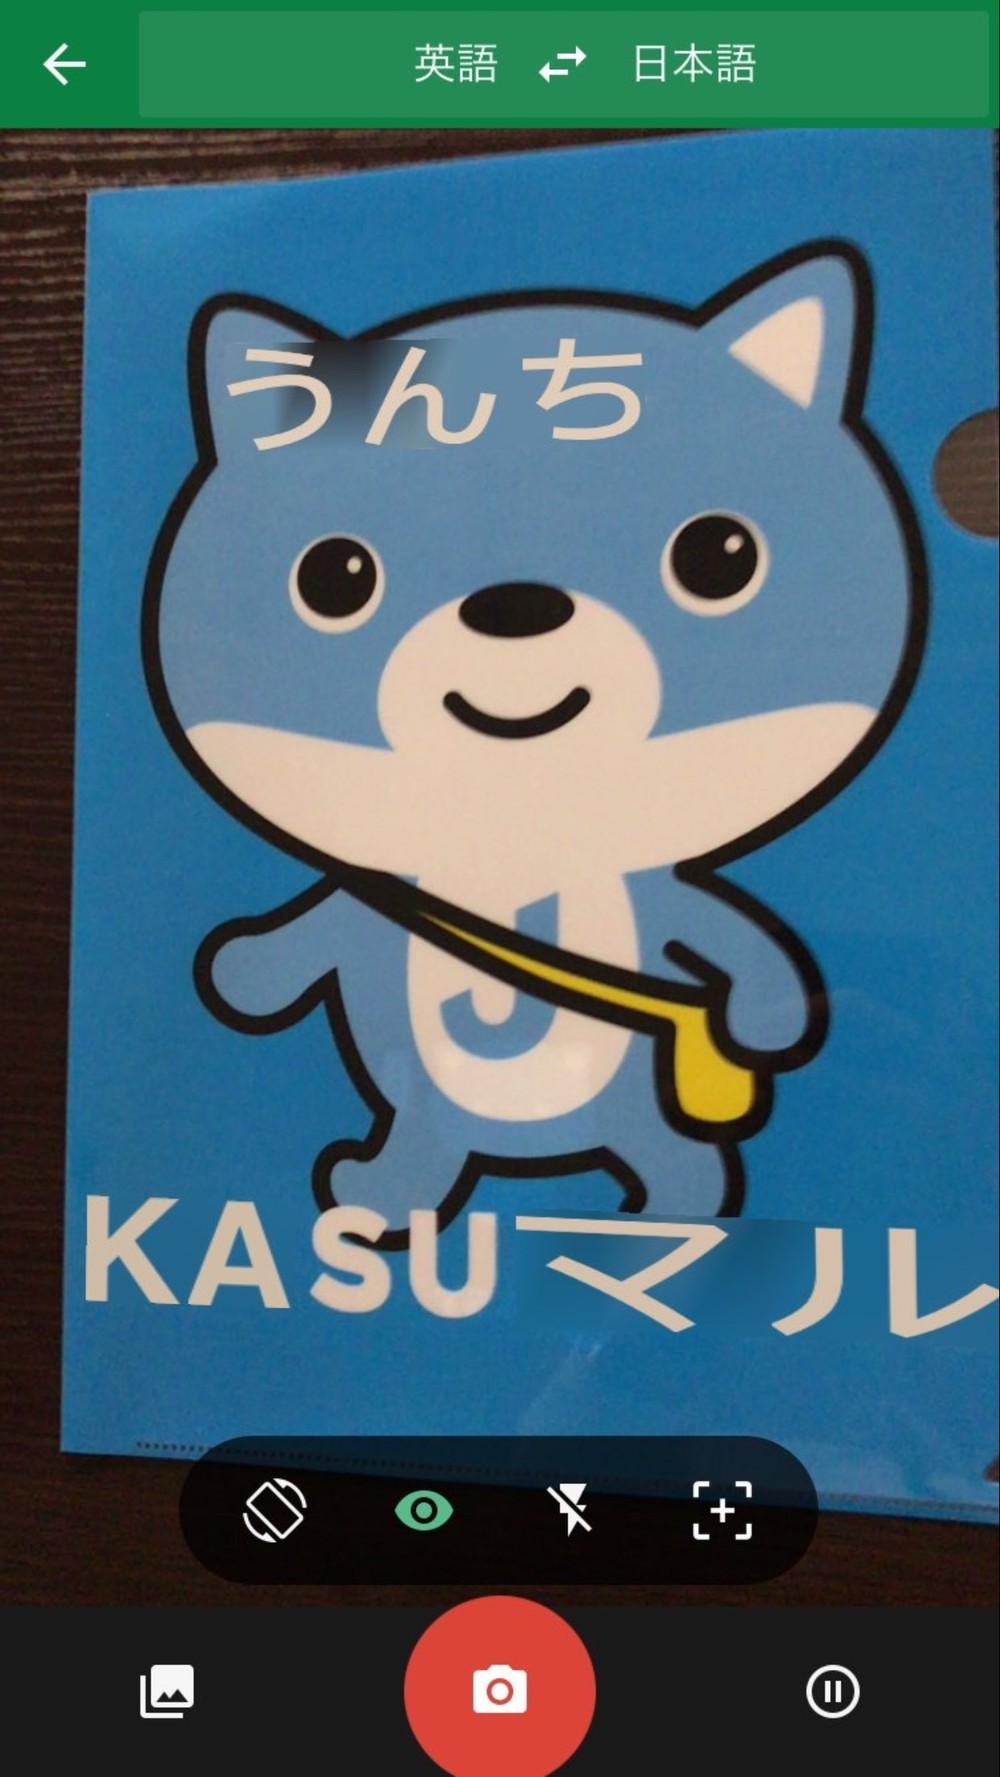 J-CASTのイメージキャラクター「カス丸」のクリアファイルでも試した。「KASUMARU」の部分は「KASUマル」になり、眉毛の部分は「うんち」になった